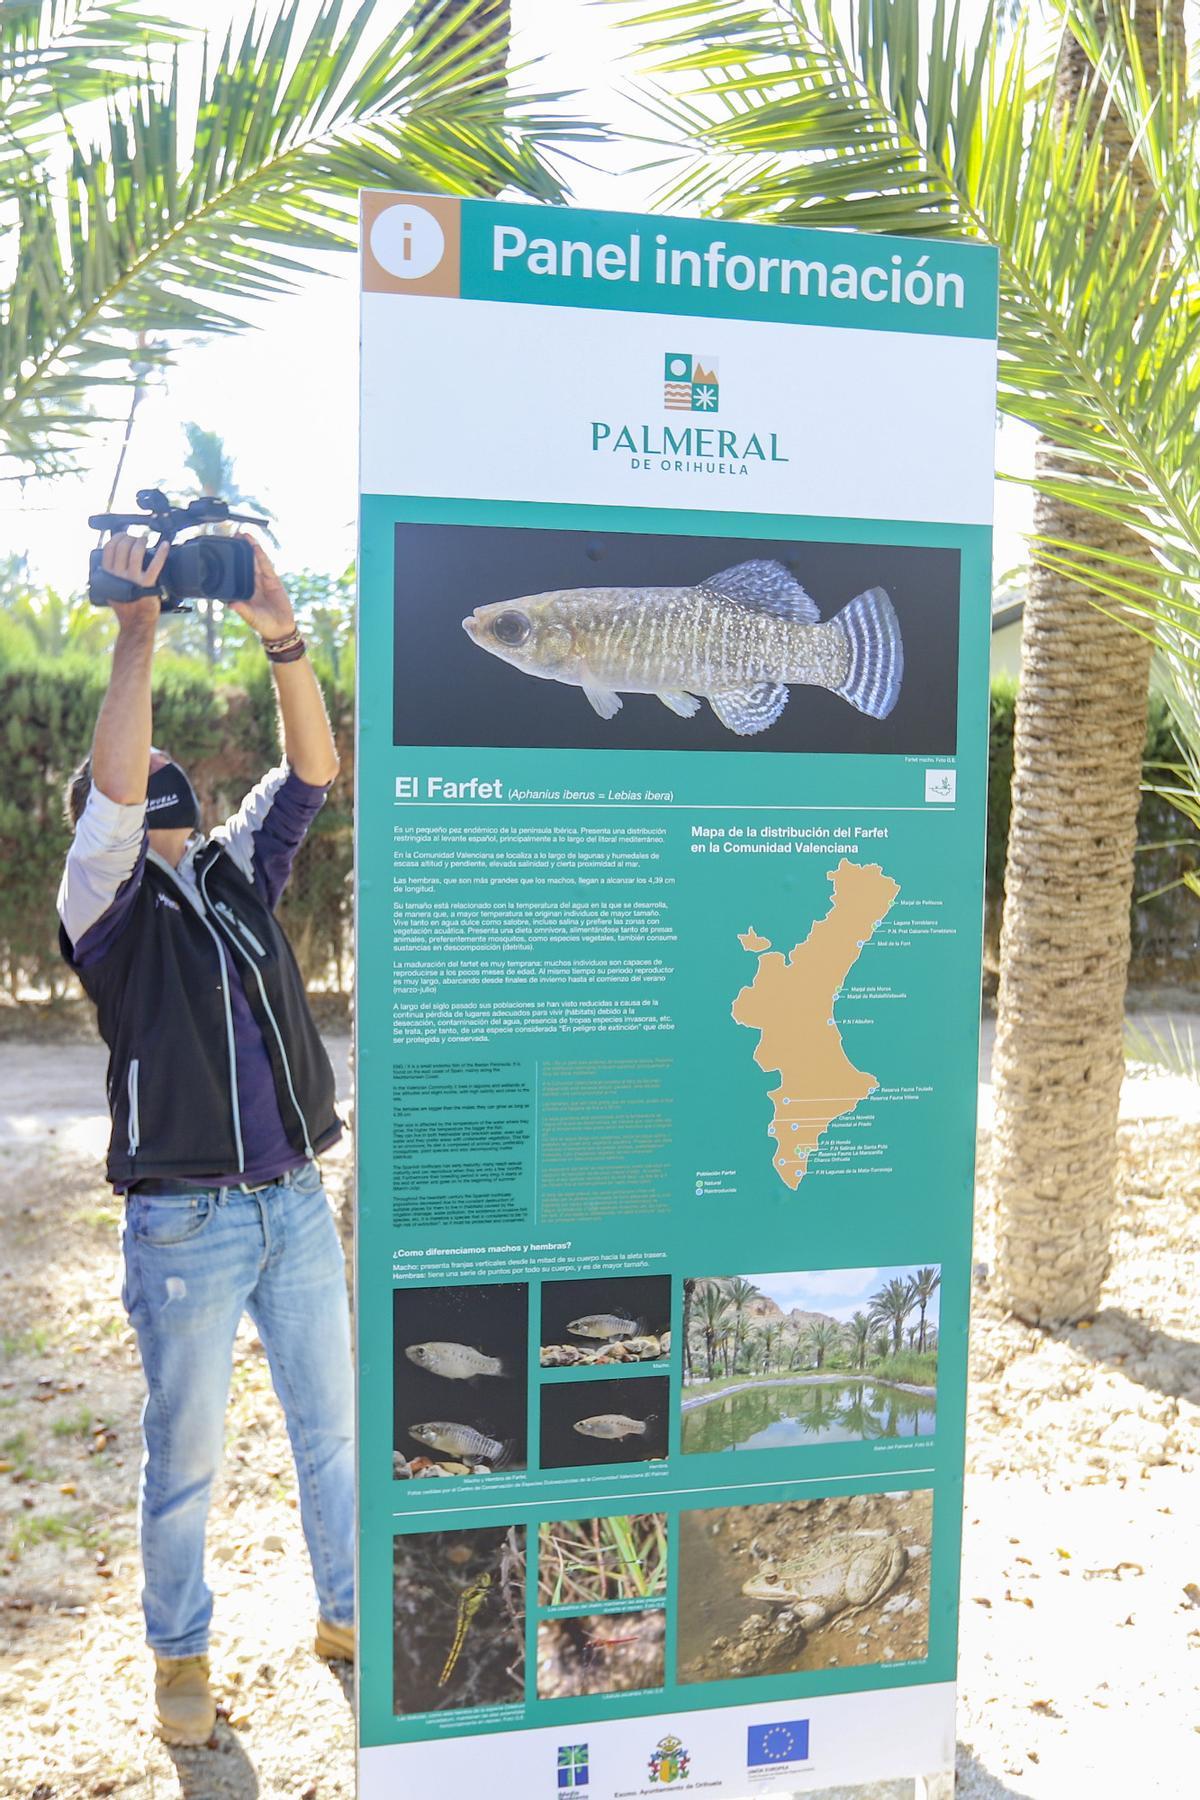 Panel de información sobre una especie de pez que habita en el Palmeral oriolano.